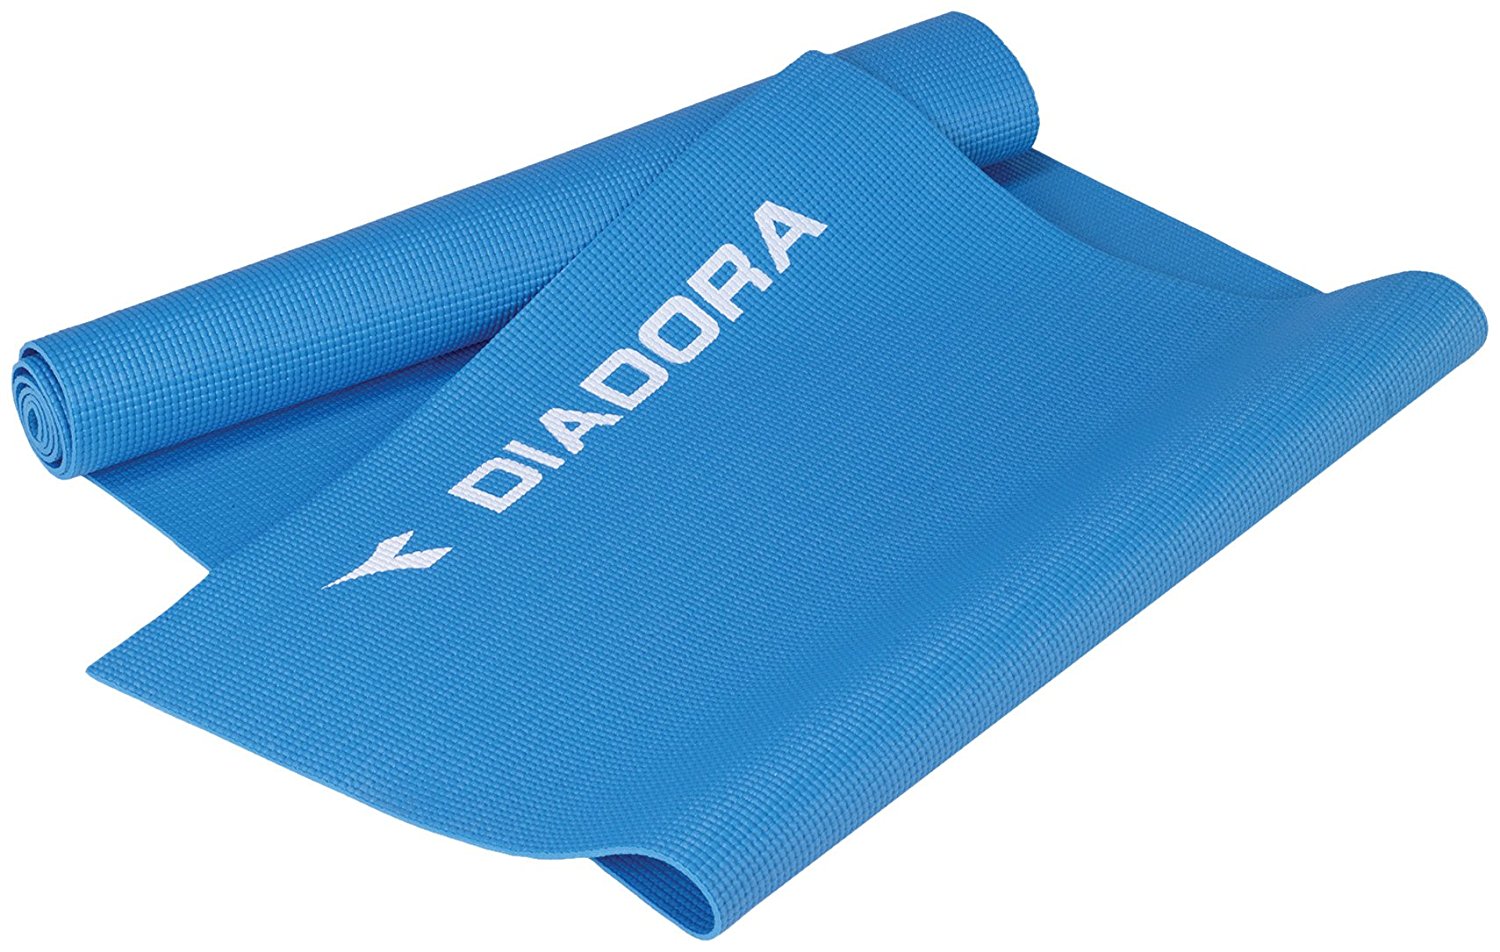 Diadora Yoga Mat Review - Yoga Mat Reviews